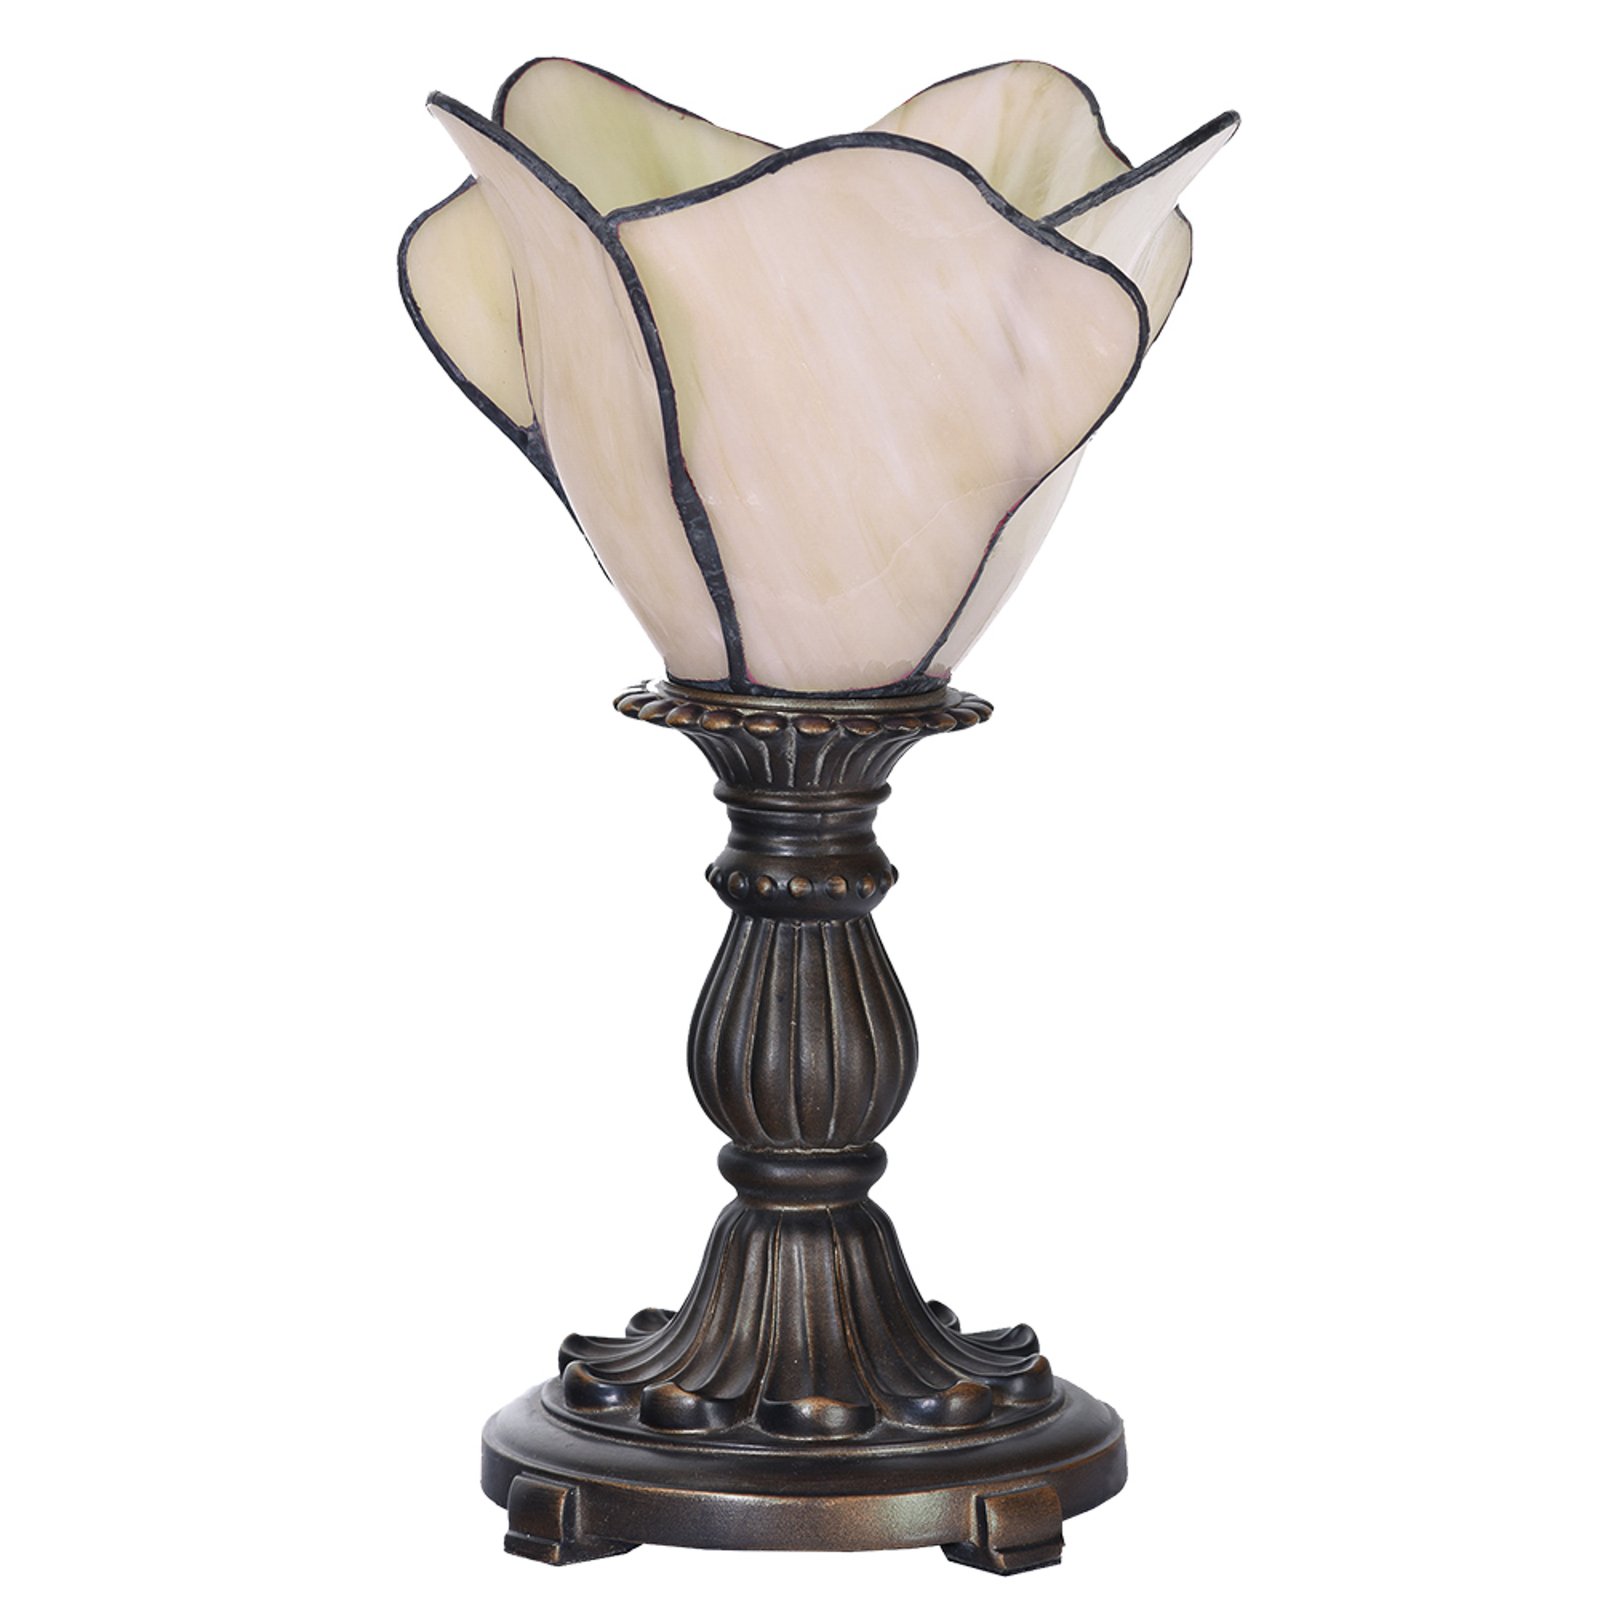 Stolová lampa 5LL-6099N, v krémovej, Tiffany štýl